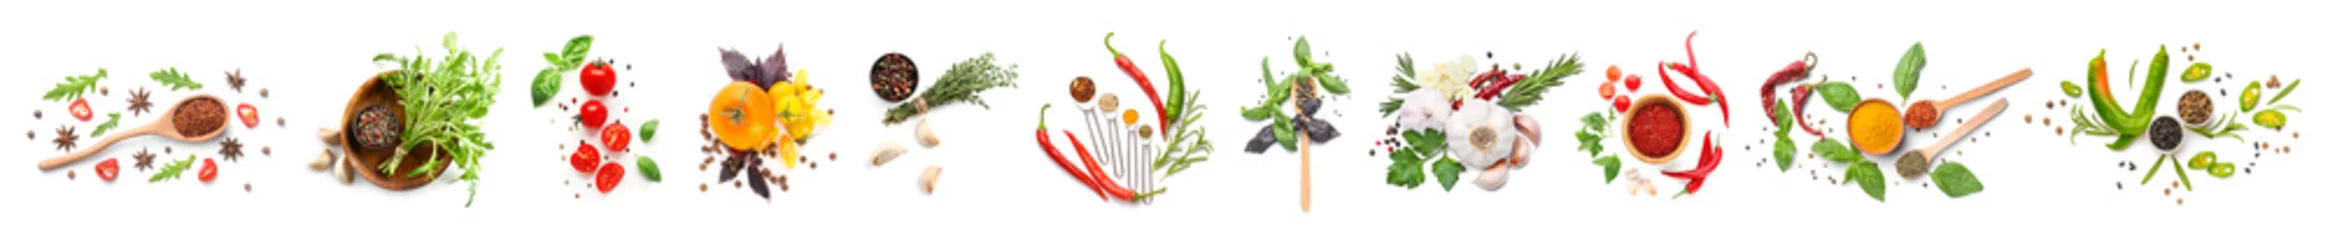 Fotobehang Verse groenten Verschillende verse specerijen, kruiden en groenten op witte achtergrond